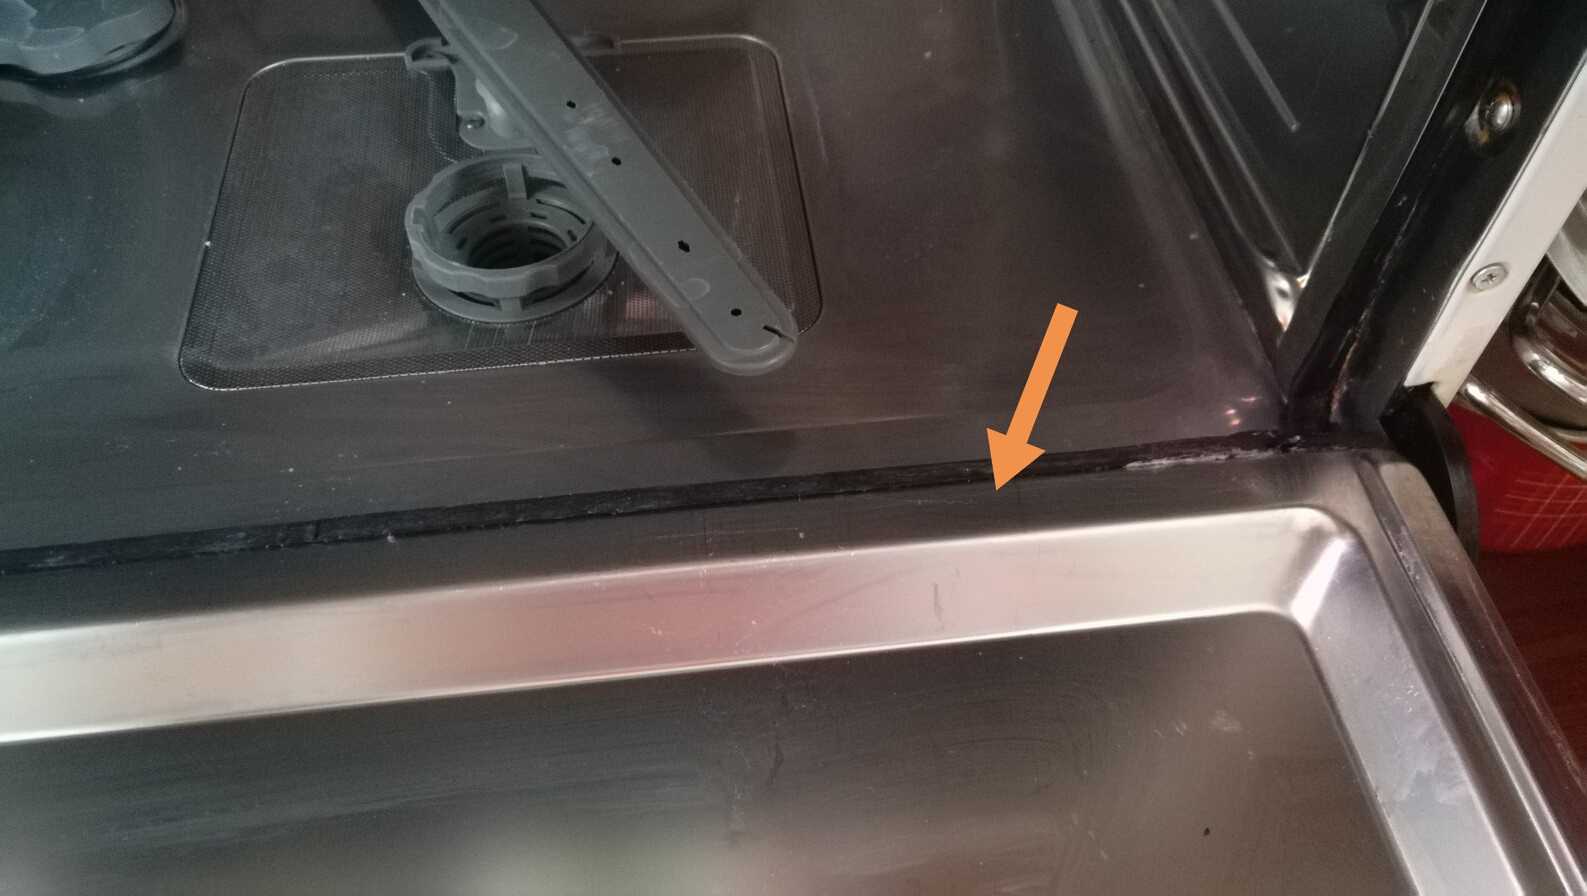 Сломалась посудомойка – можно ли починить самостоятельно?